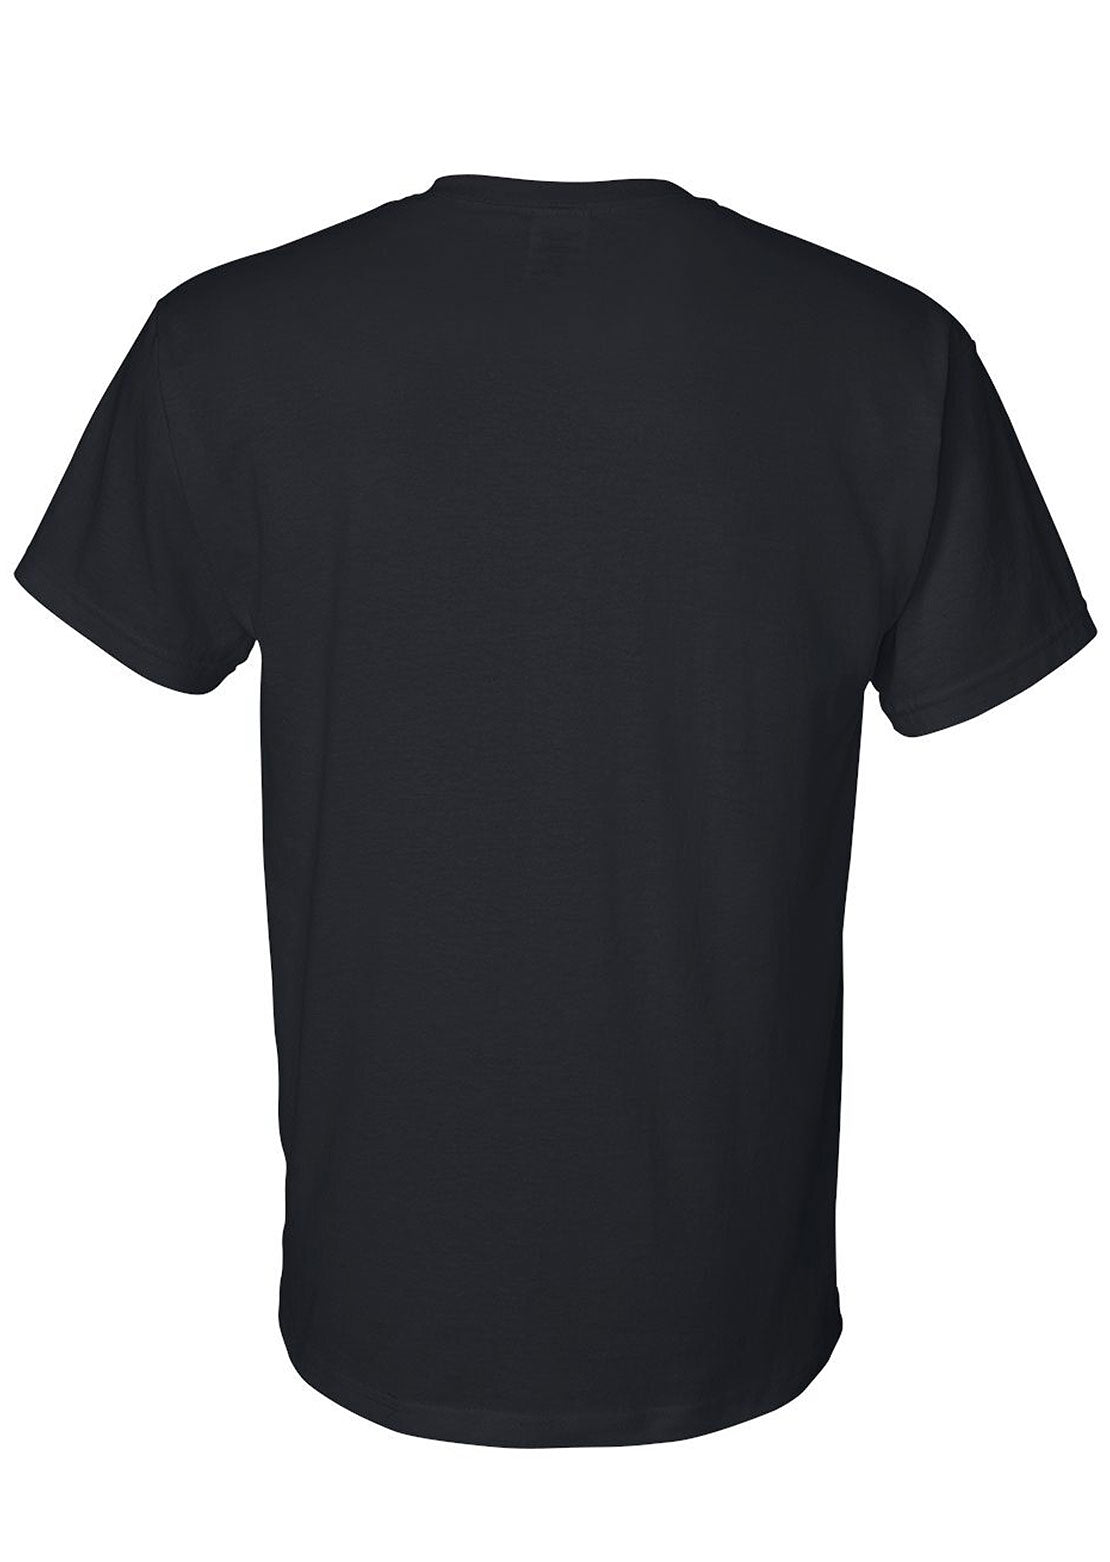 AN-MORIN T-Shirt Unisex Black